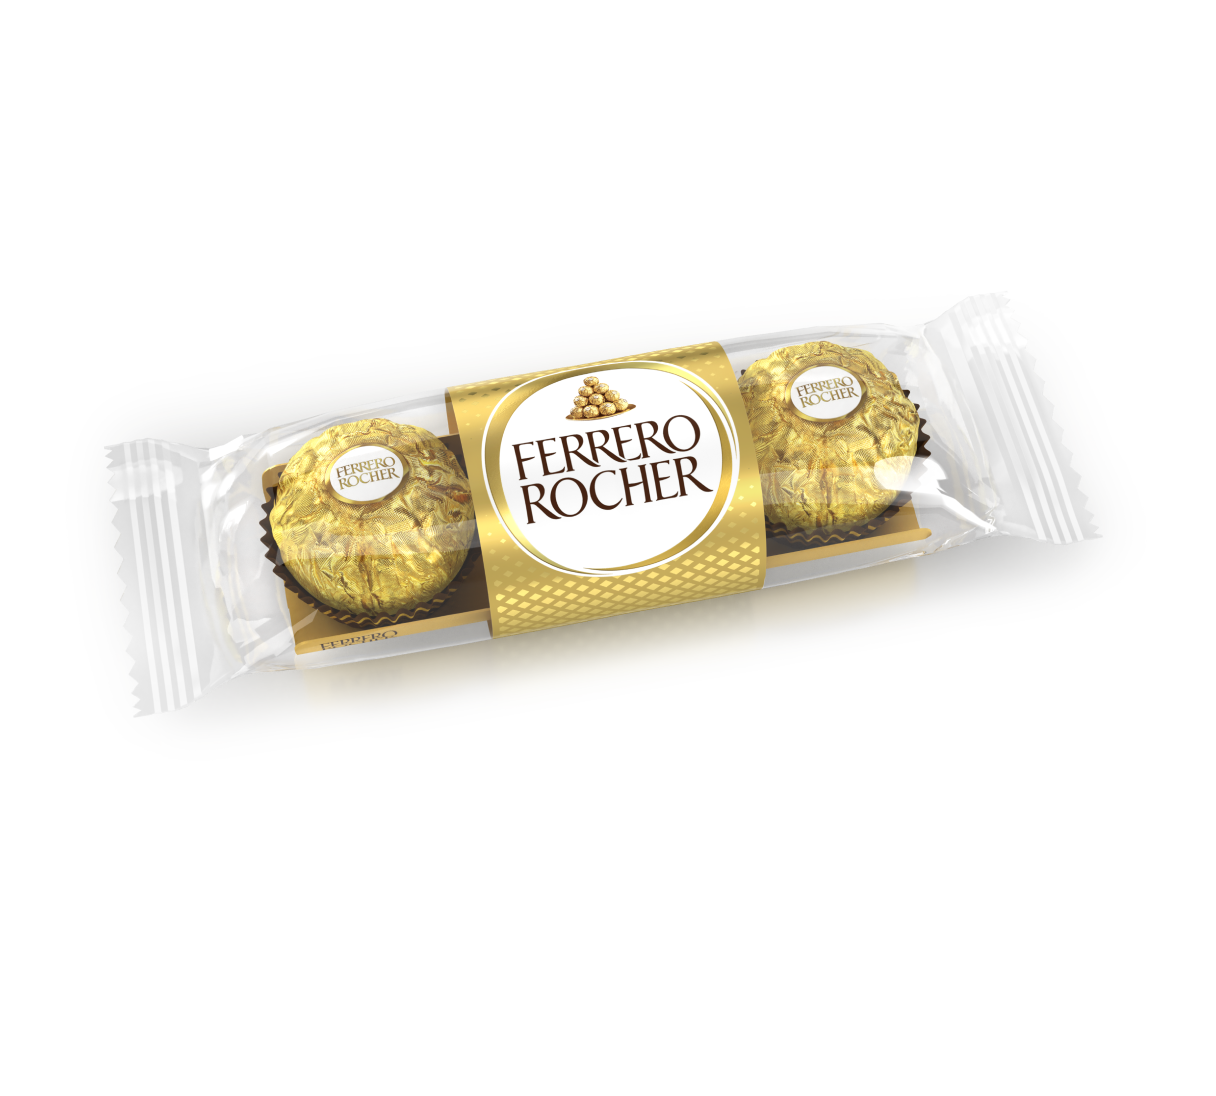 Ferrero rocher moulage oeuf chocolat noir et noisettes x1-100g